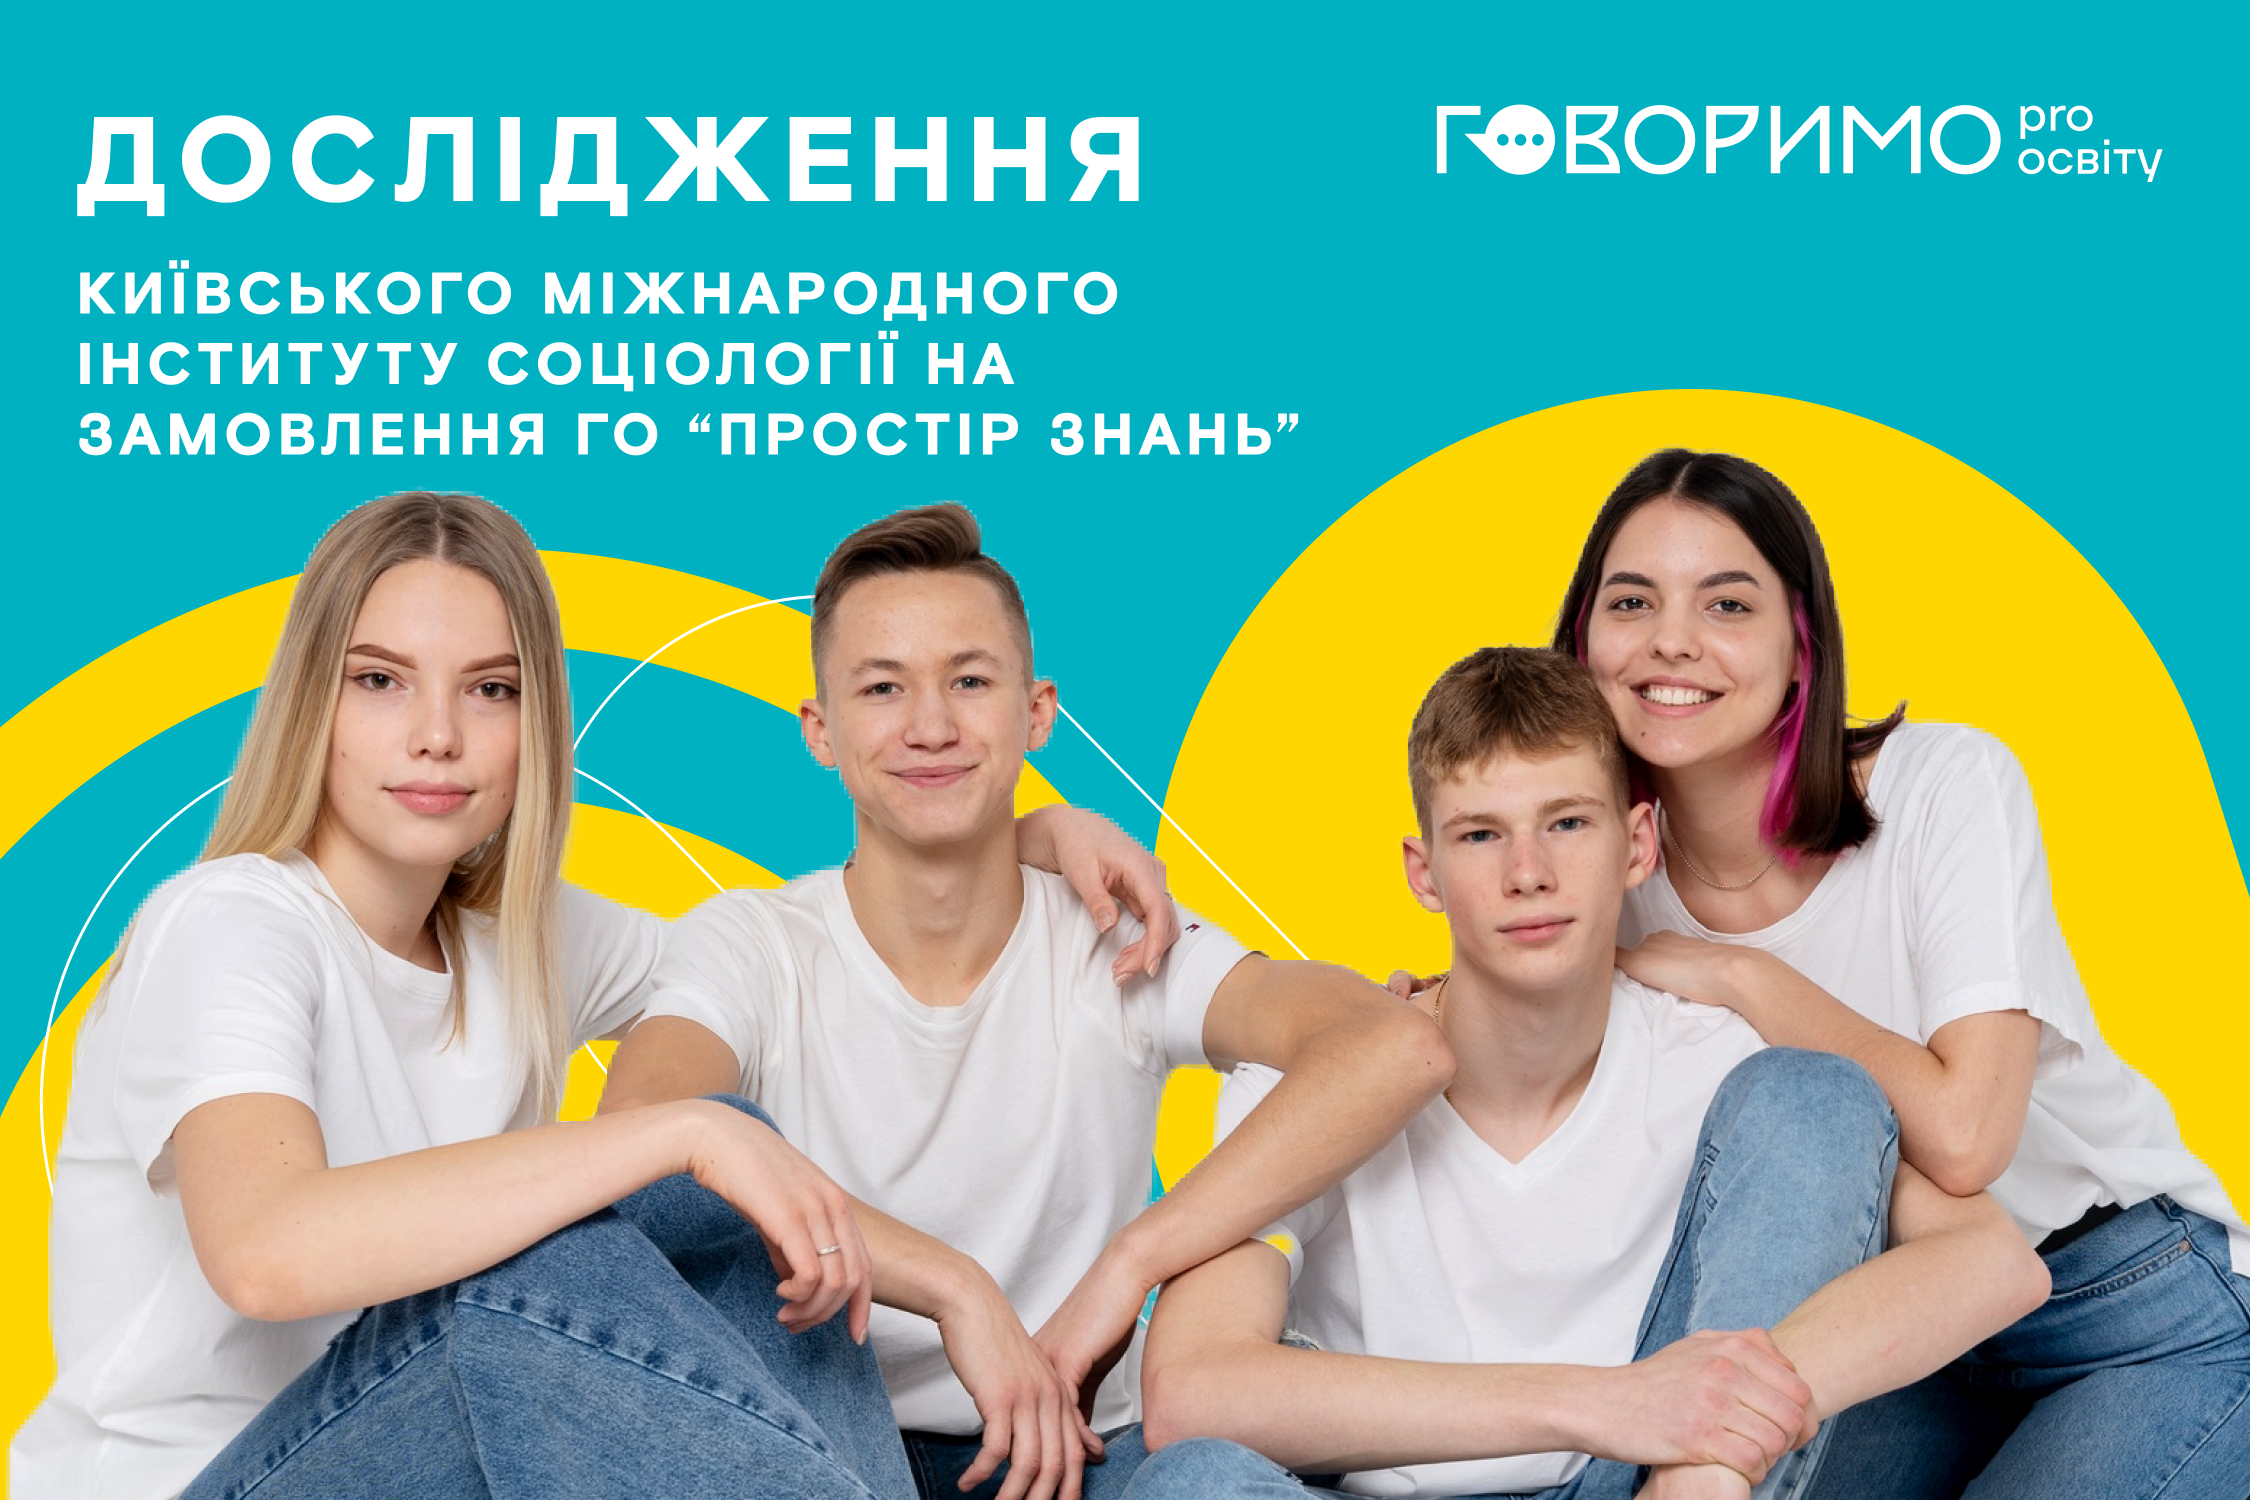 Українським школярам не вистачає практичних знань: дослідження  image